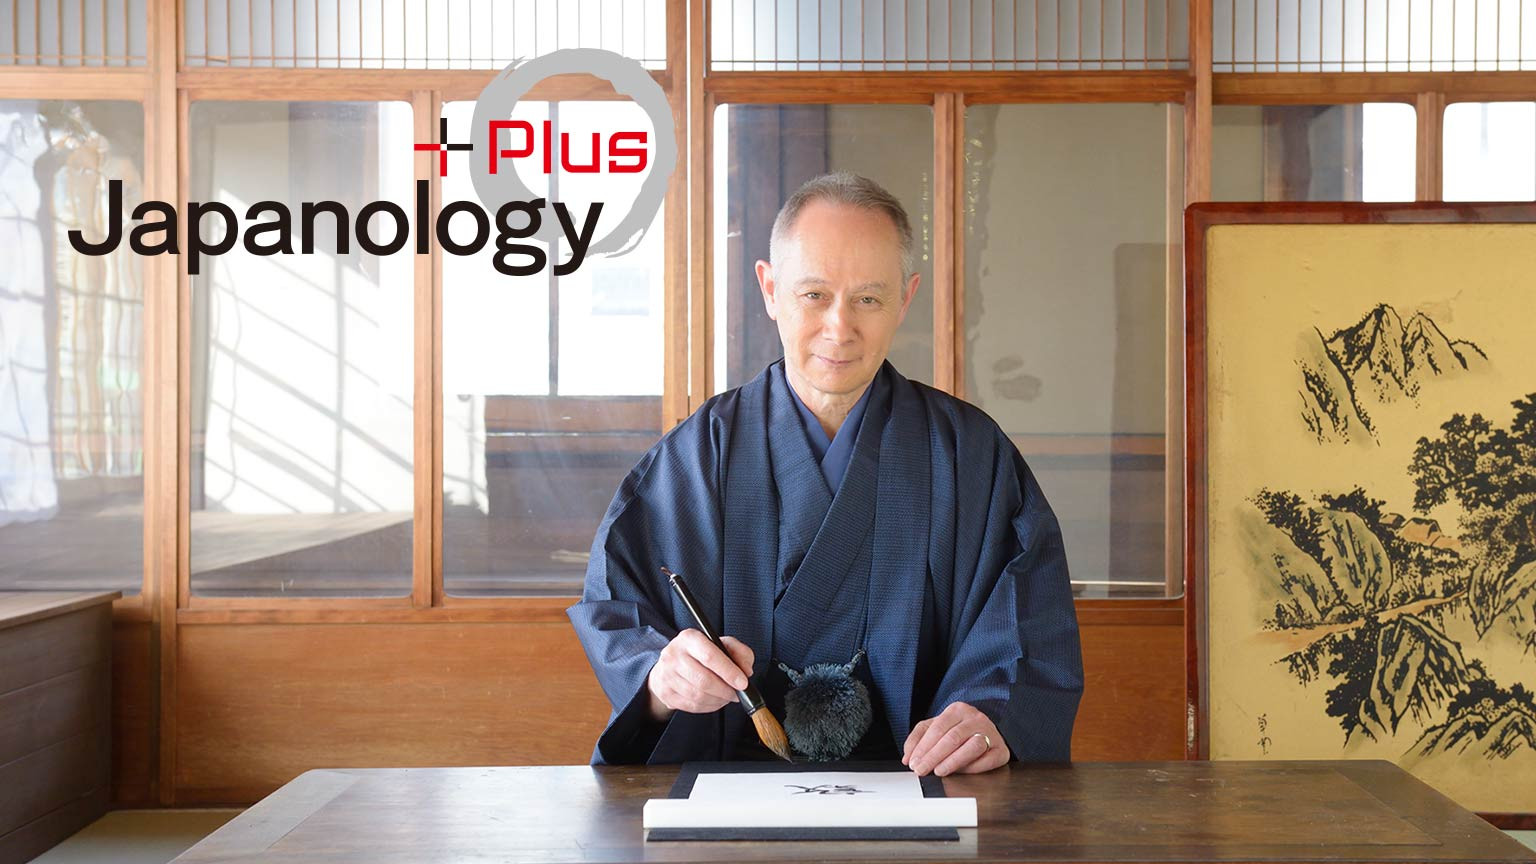 掃描日本加彩
Japanology Plus